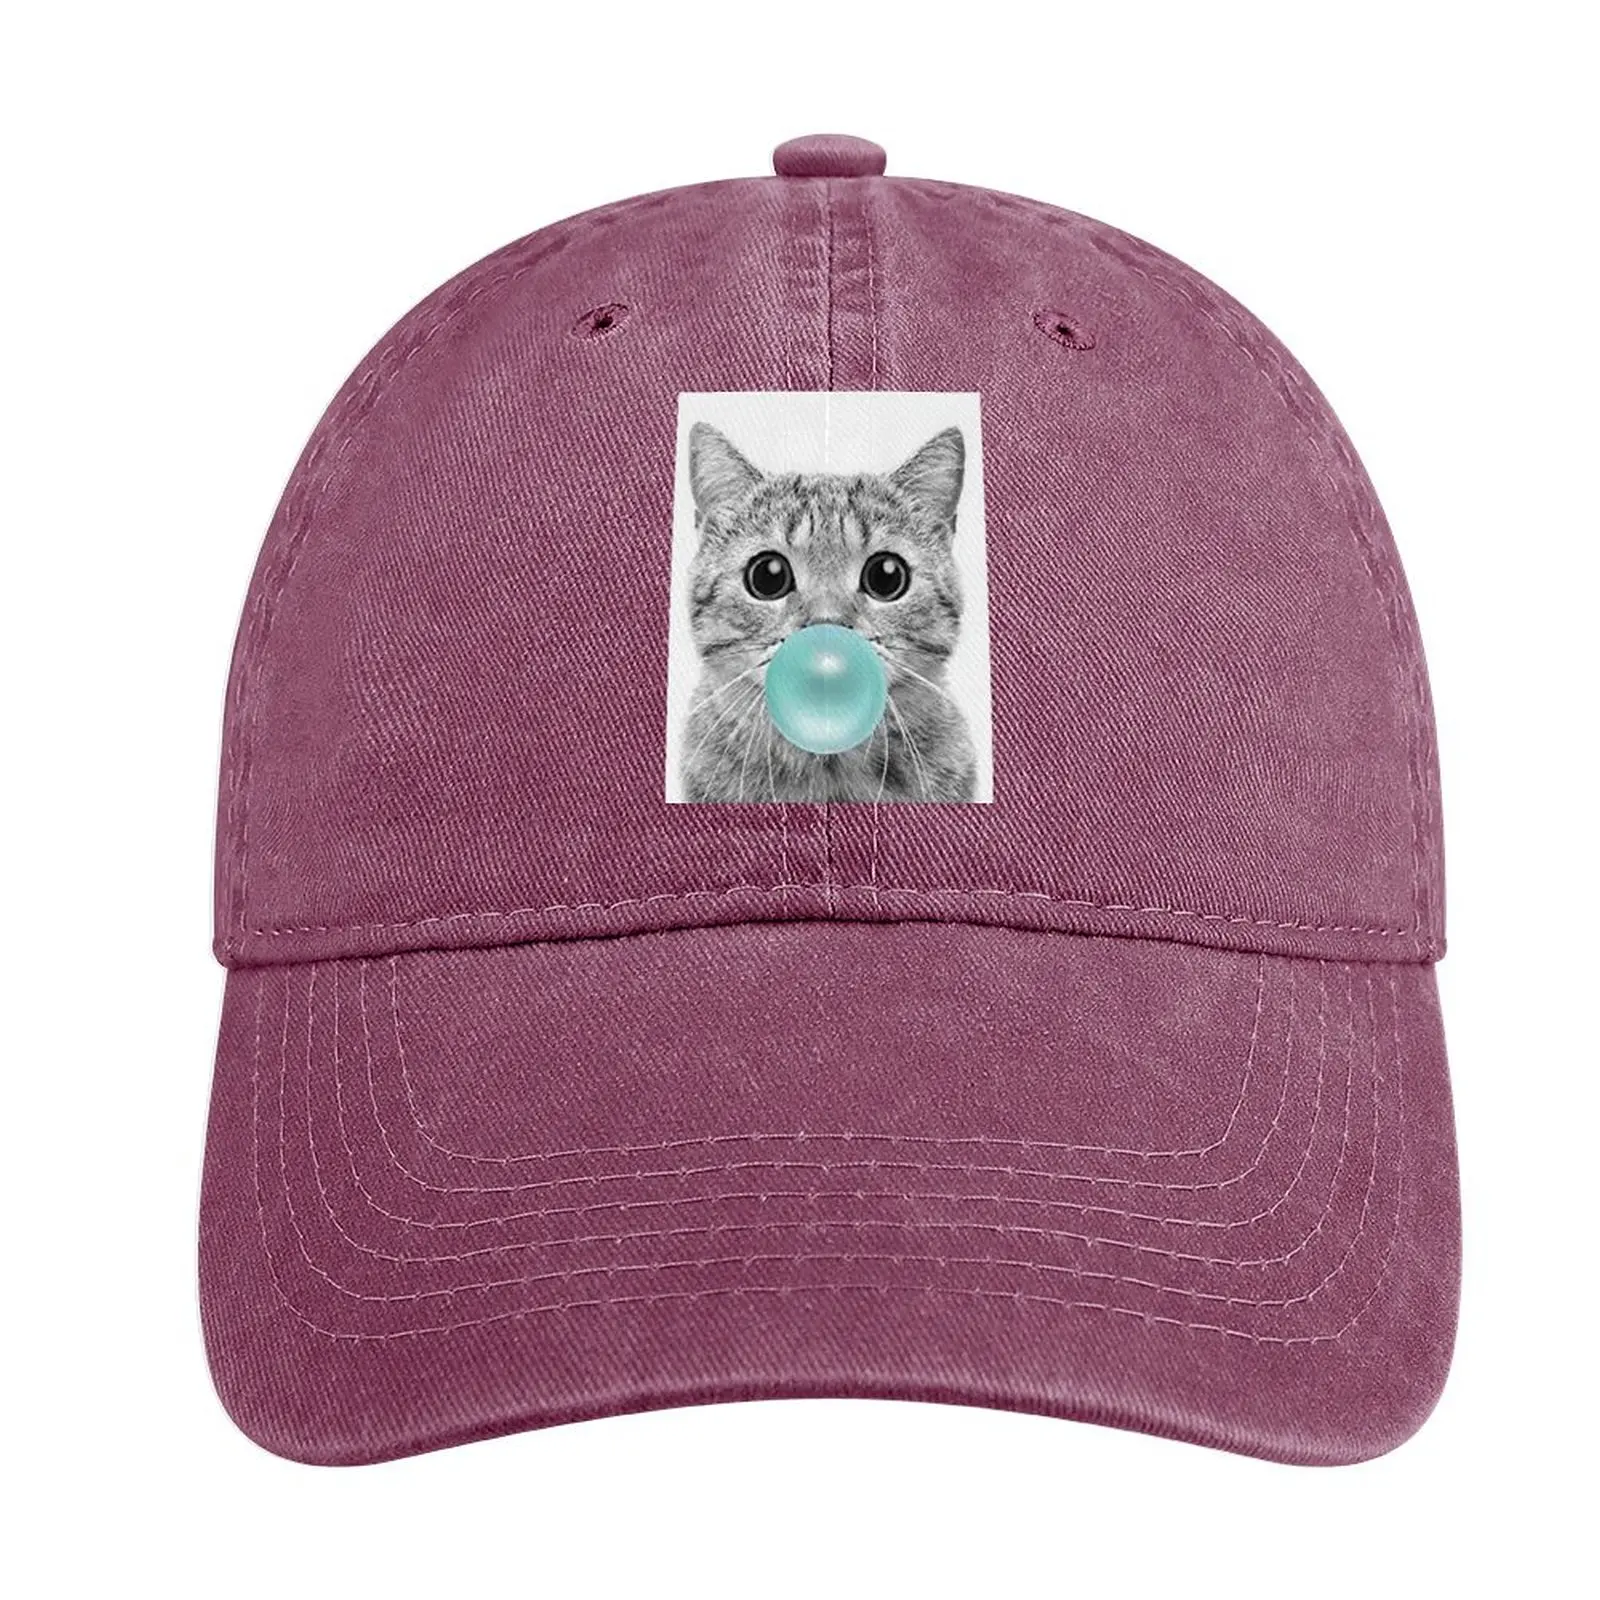 

Cat Chewing Blue Bubble Gum Cowboy Hat Thermal Visor summer hats Women'S Cap Men'S